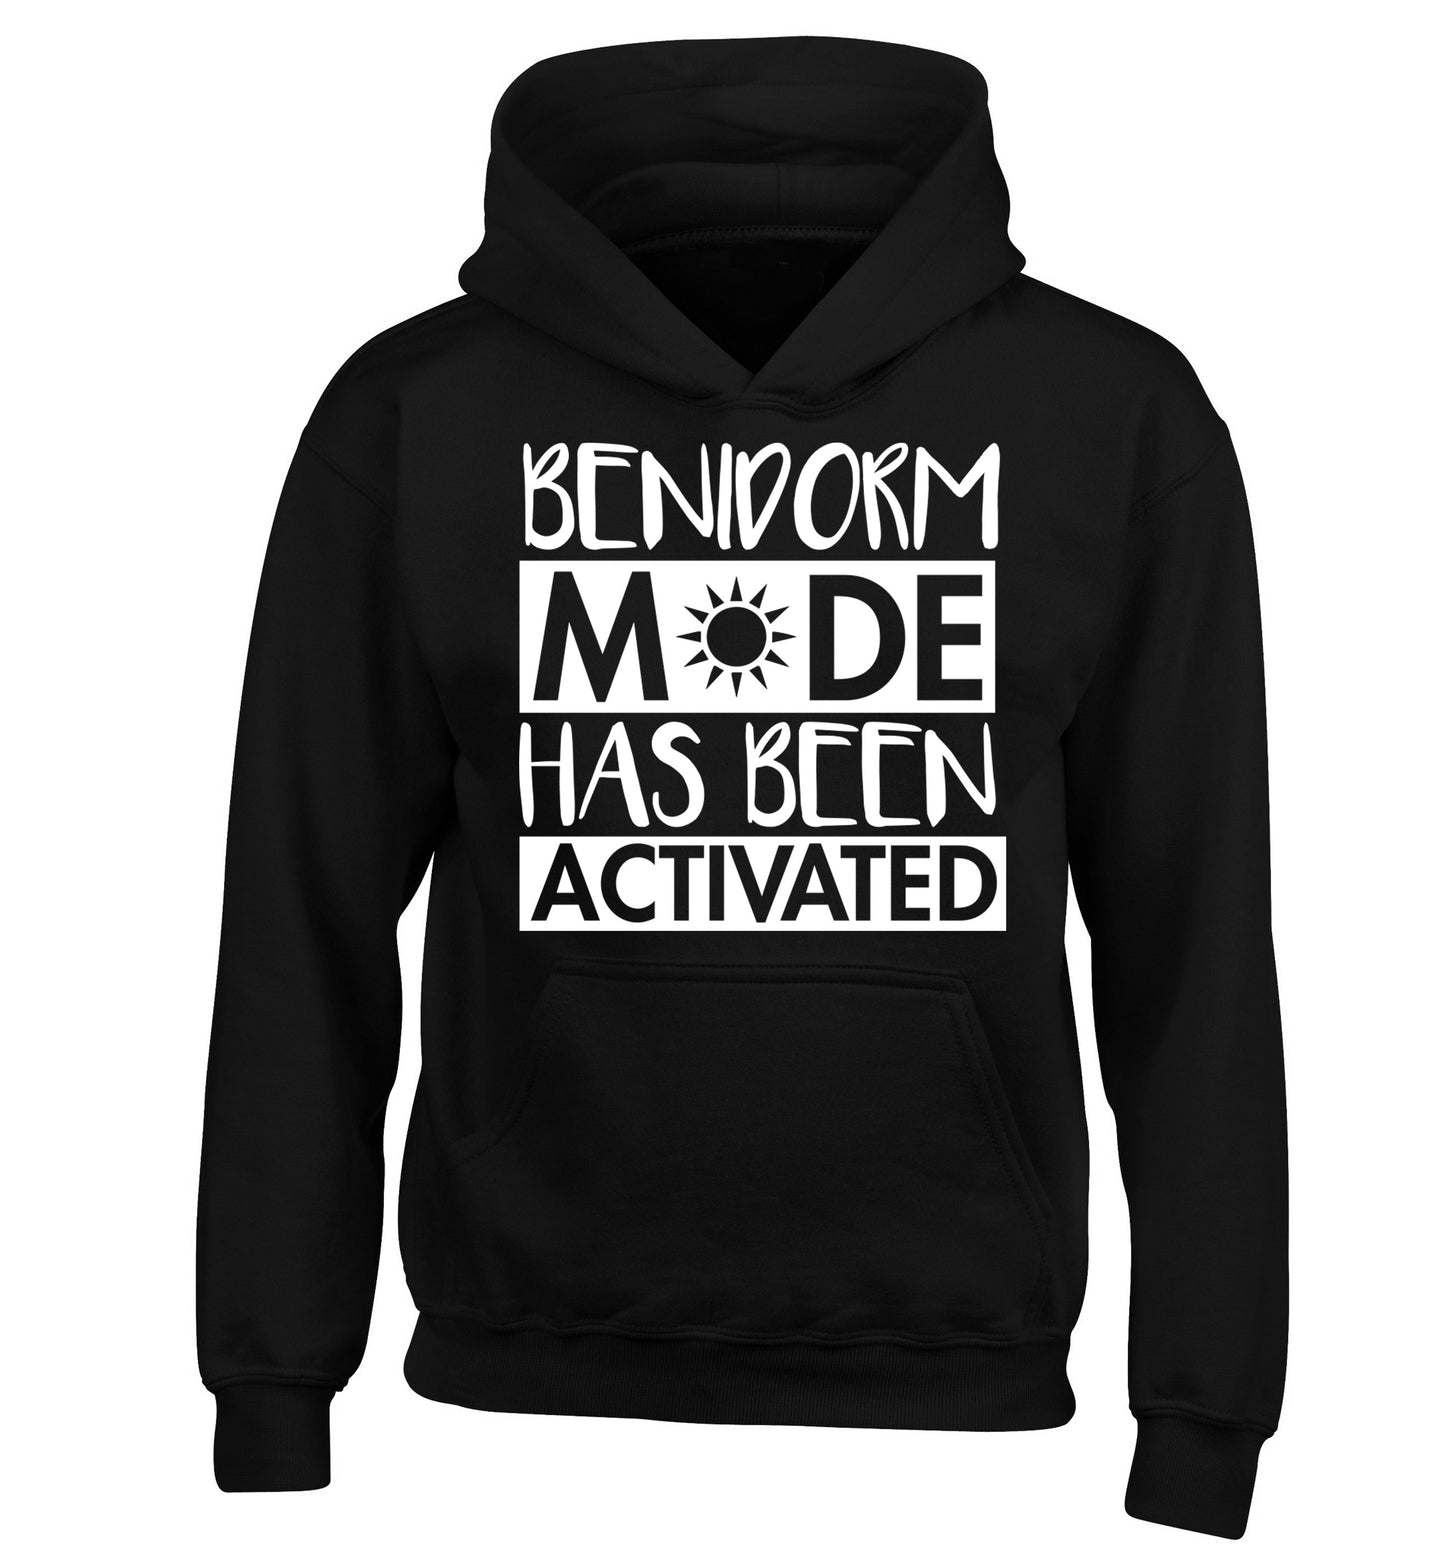 Benidorm mode has been activated children's black hoodie 12-14 Years